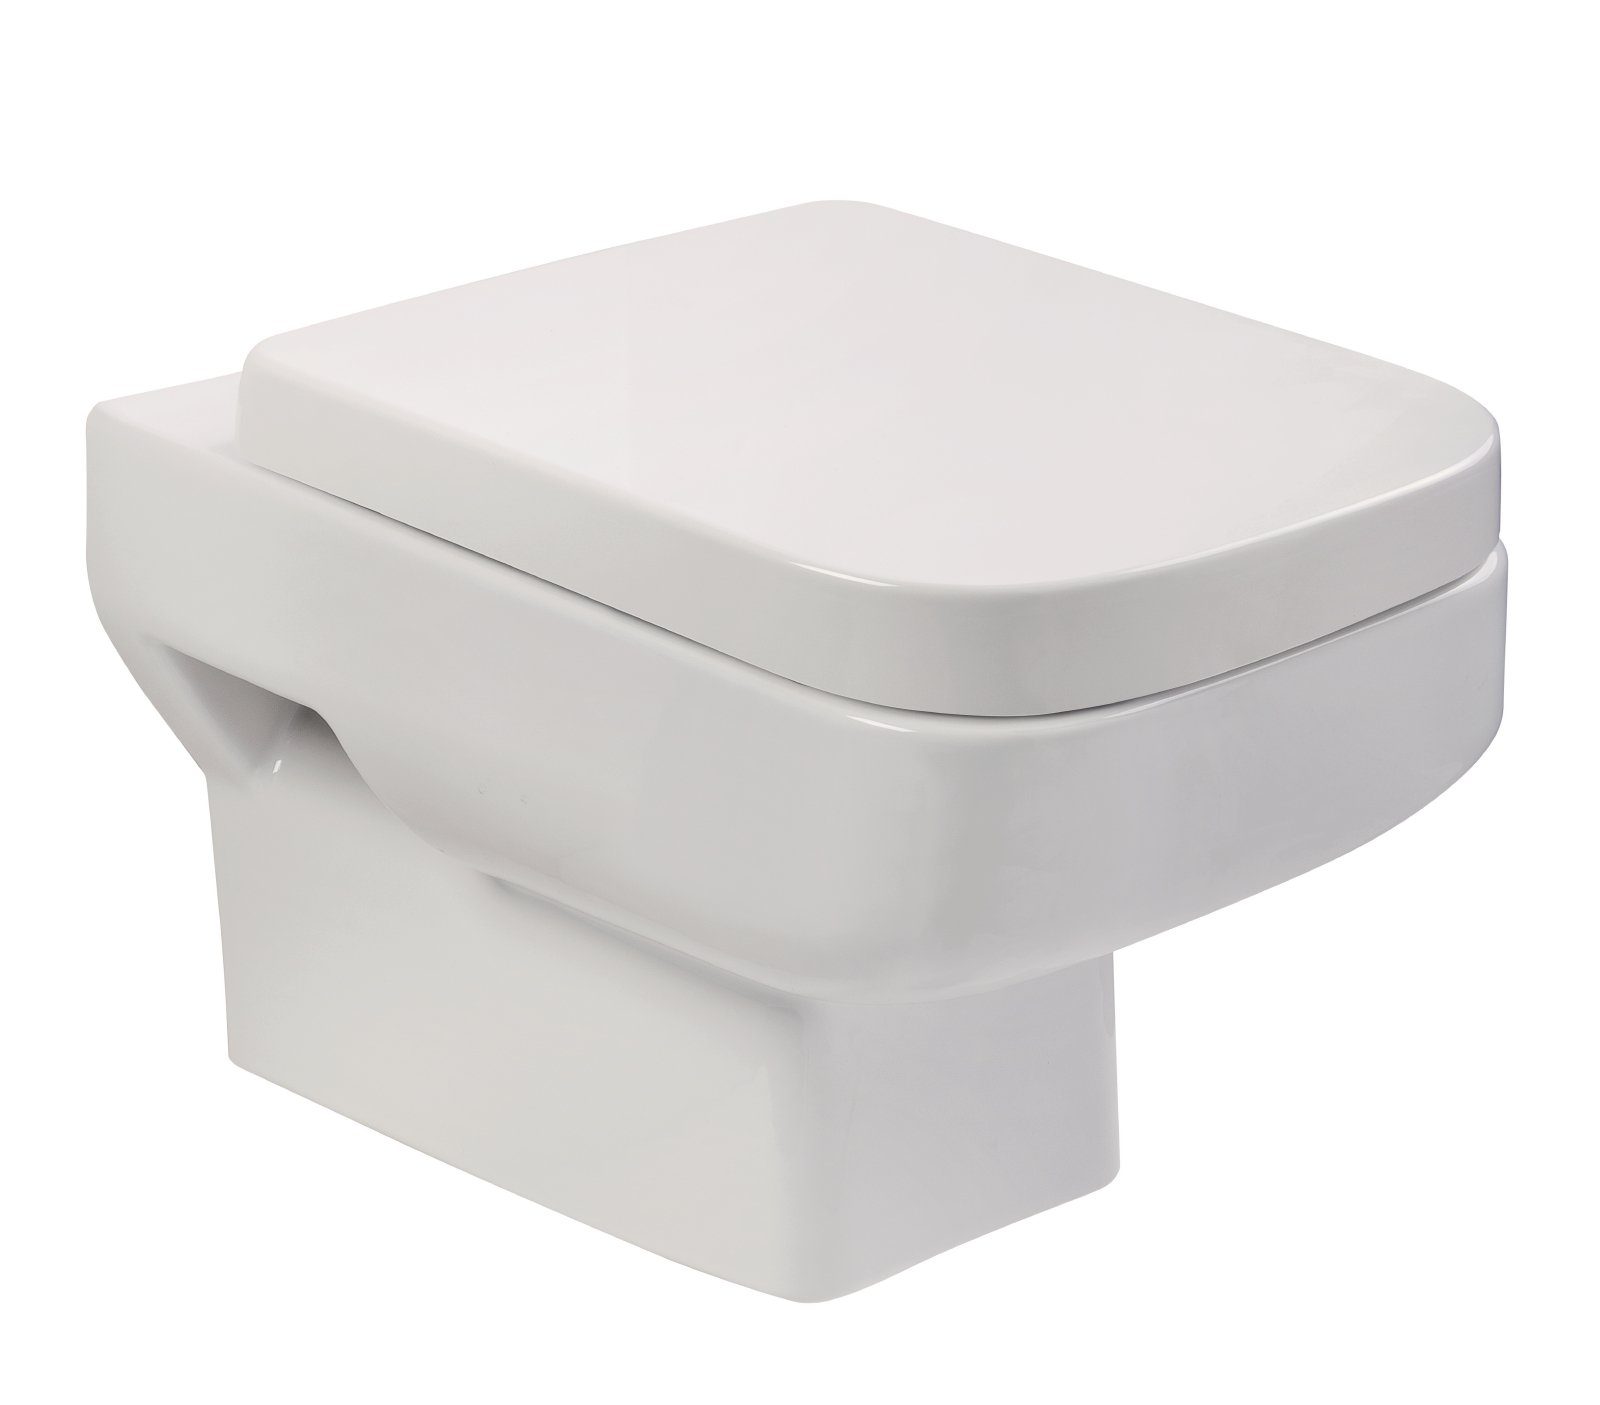 aquaSu Tiefspül-WC, Wandhängend, Abgang Waagerecht, Wand WC, Weiß, WC-Sitz mit Absenkautomatik, 047791